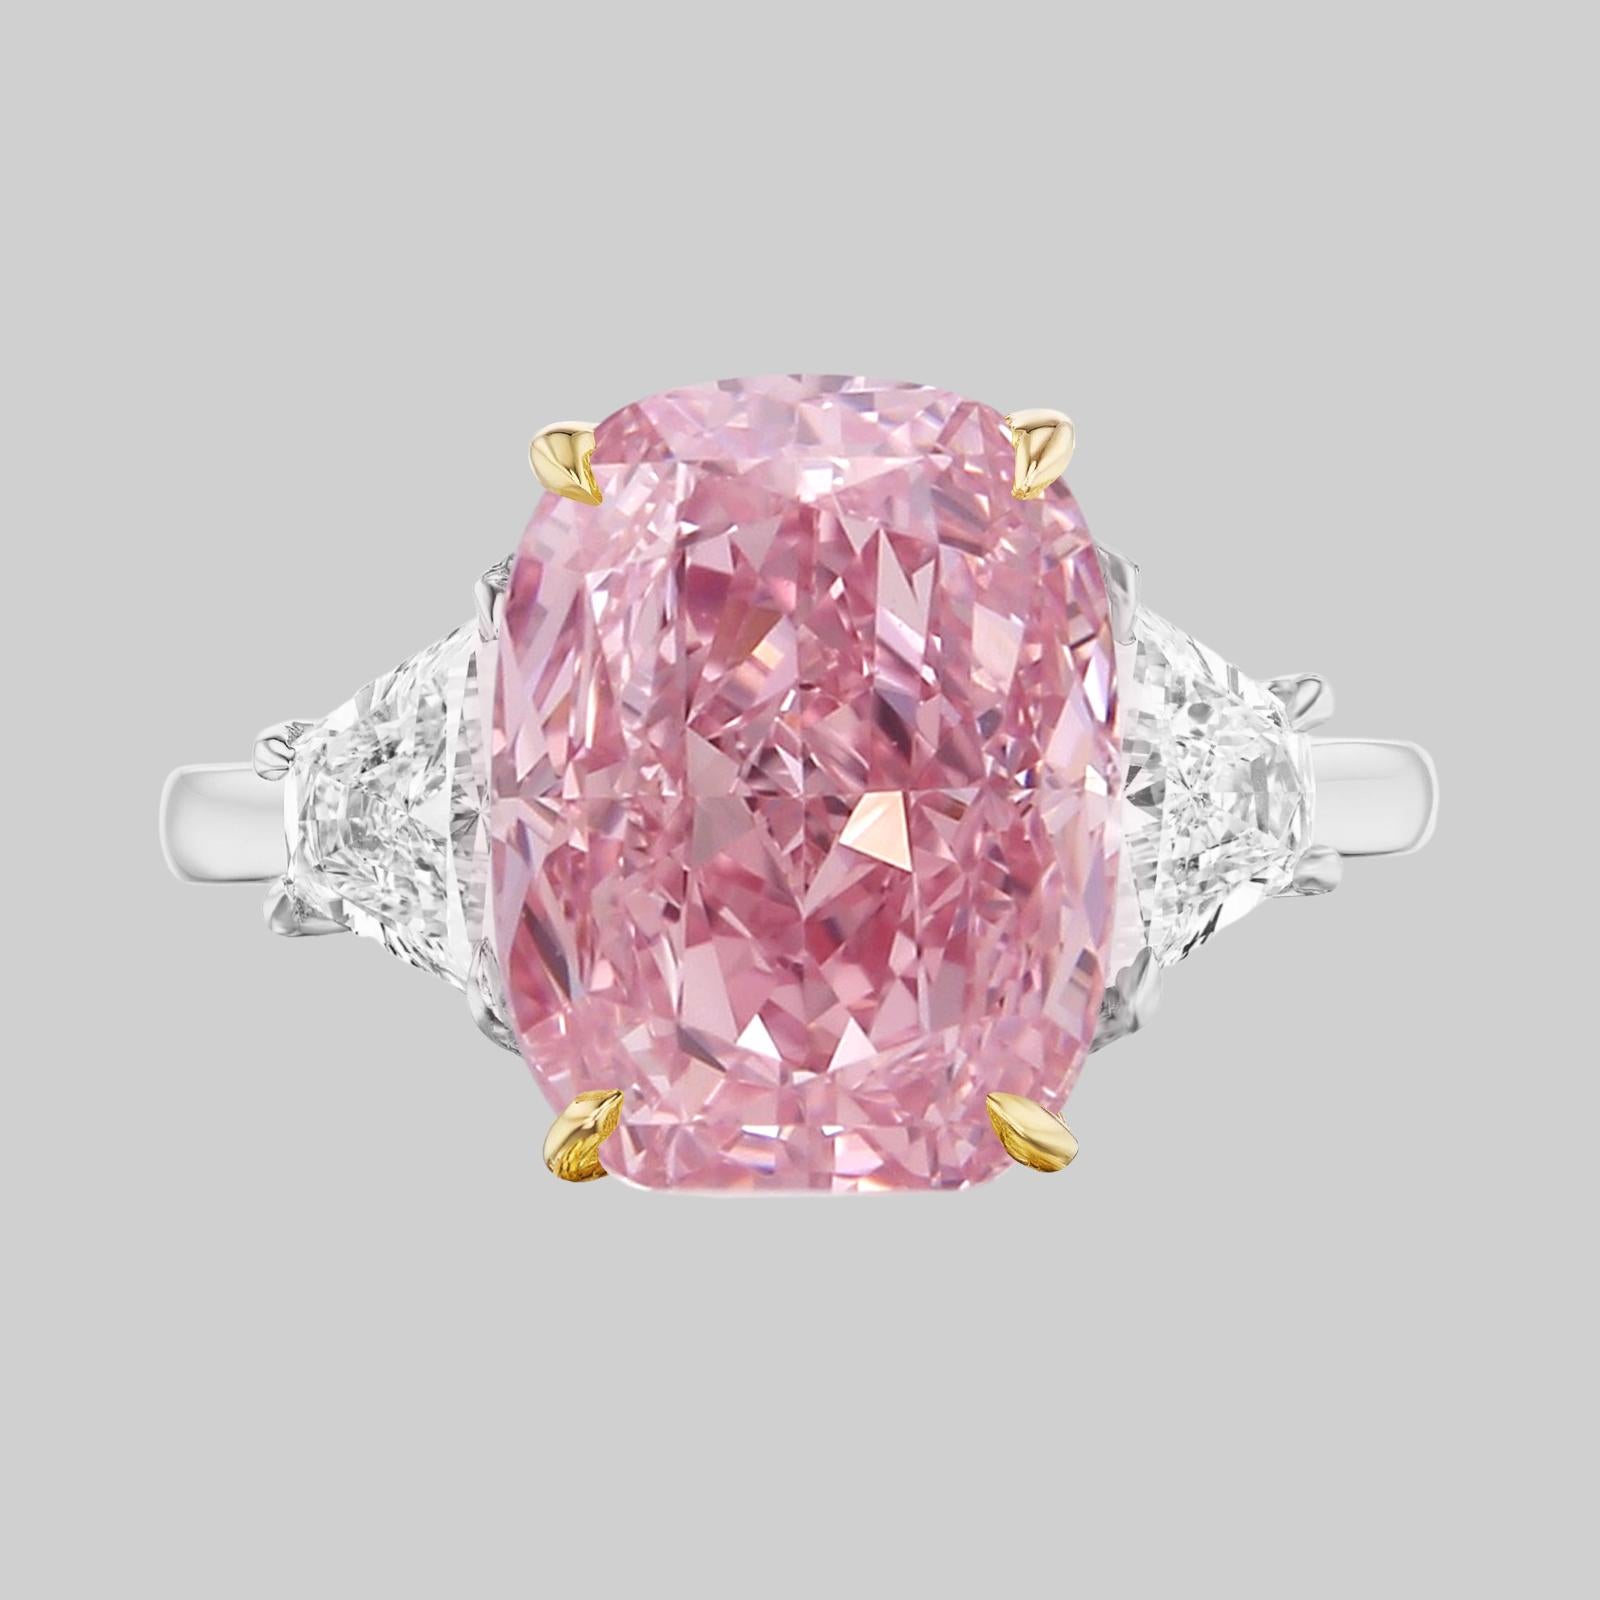 7 carat pink diamond ring